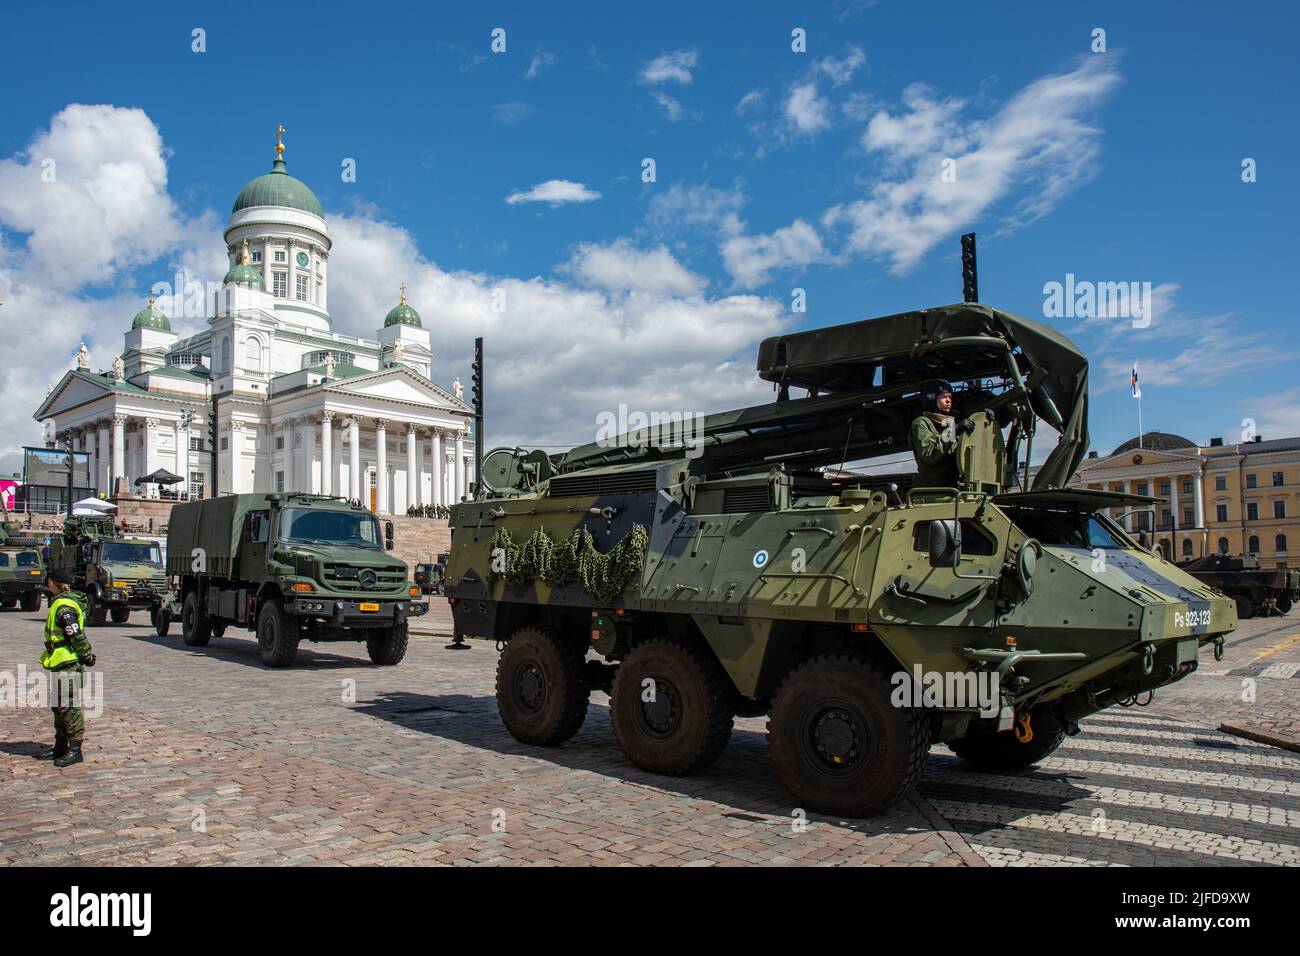 Panssari-Sisu oder Pasi, ein gepanzerter Personenwagen auf Rädern bei der Militärparade der Streitkräfte am Tag der Flagge auf dem Senatsplatz in Helsinki, Finnland Stockfoto